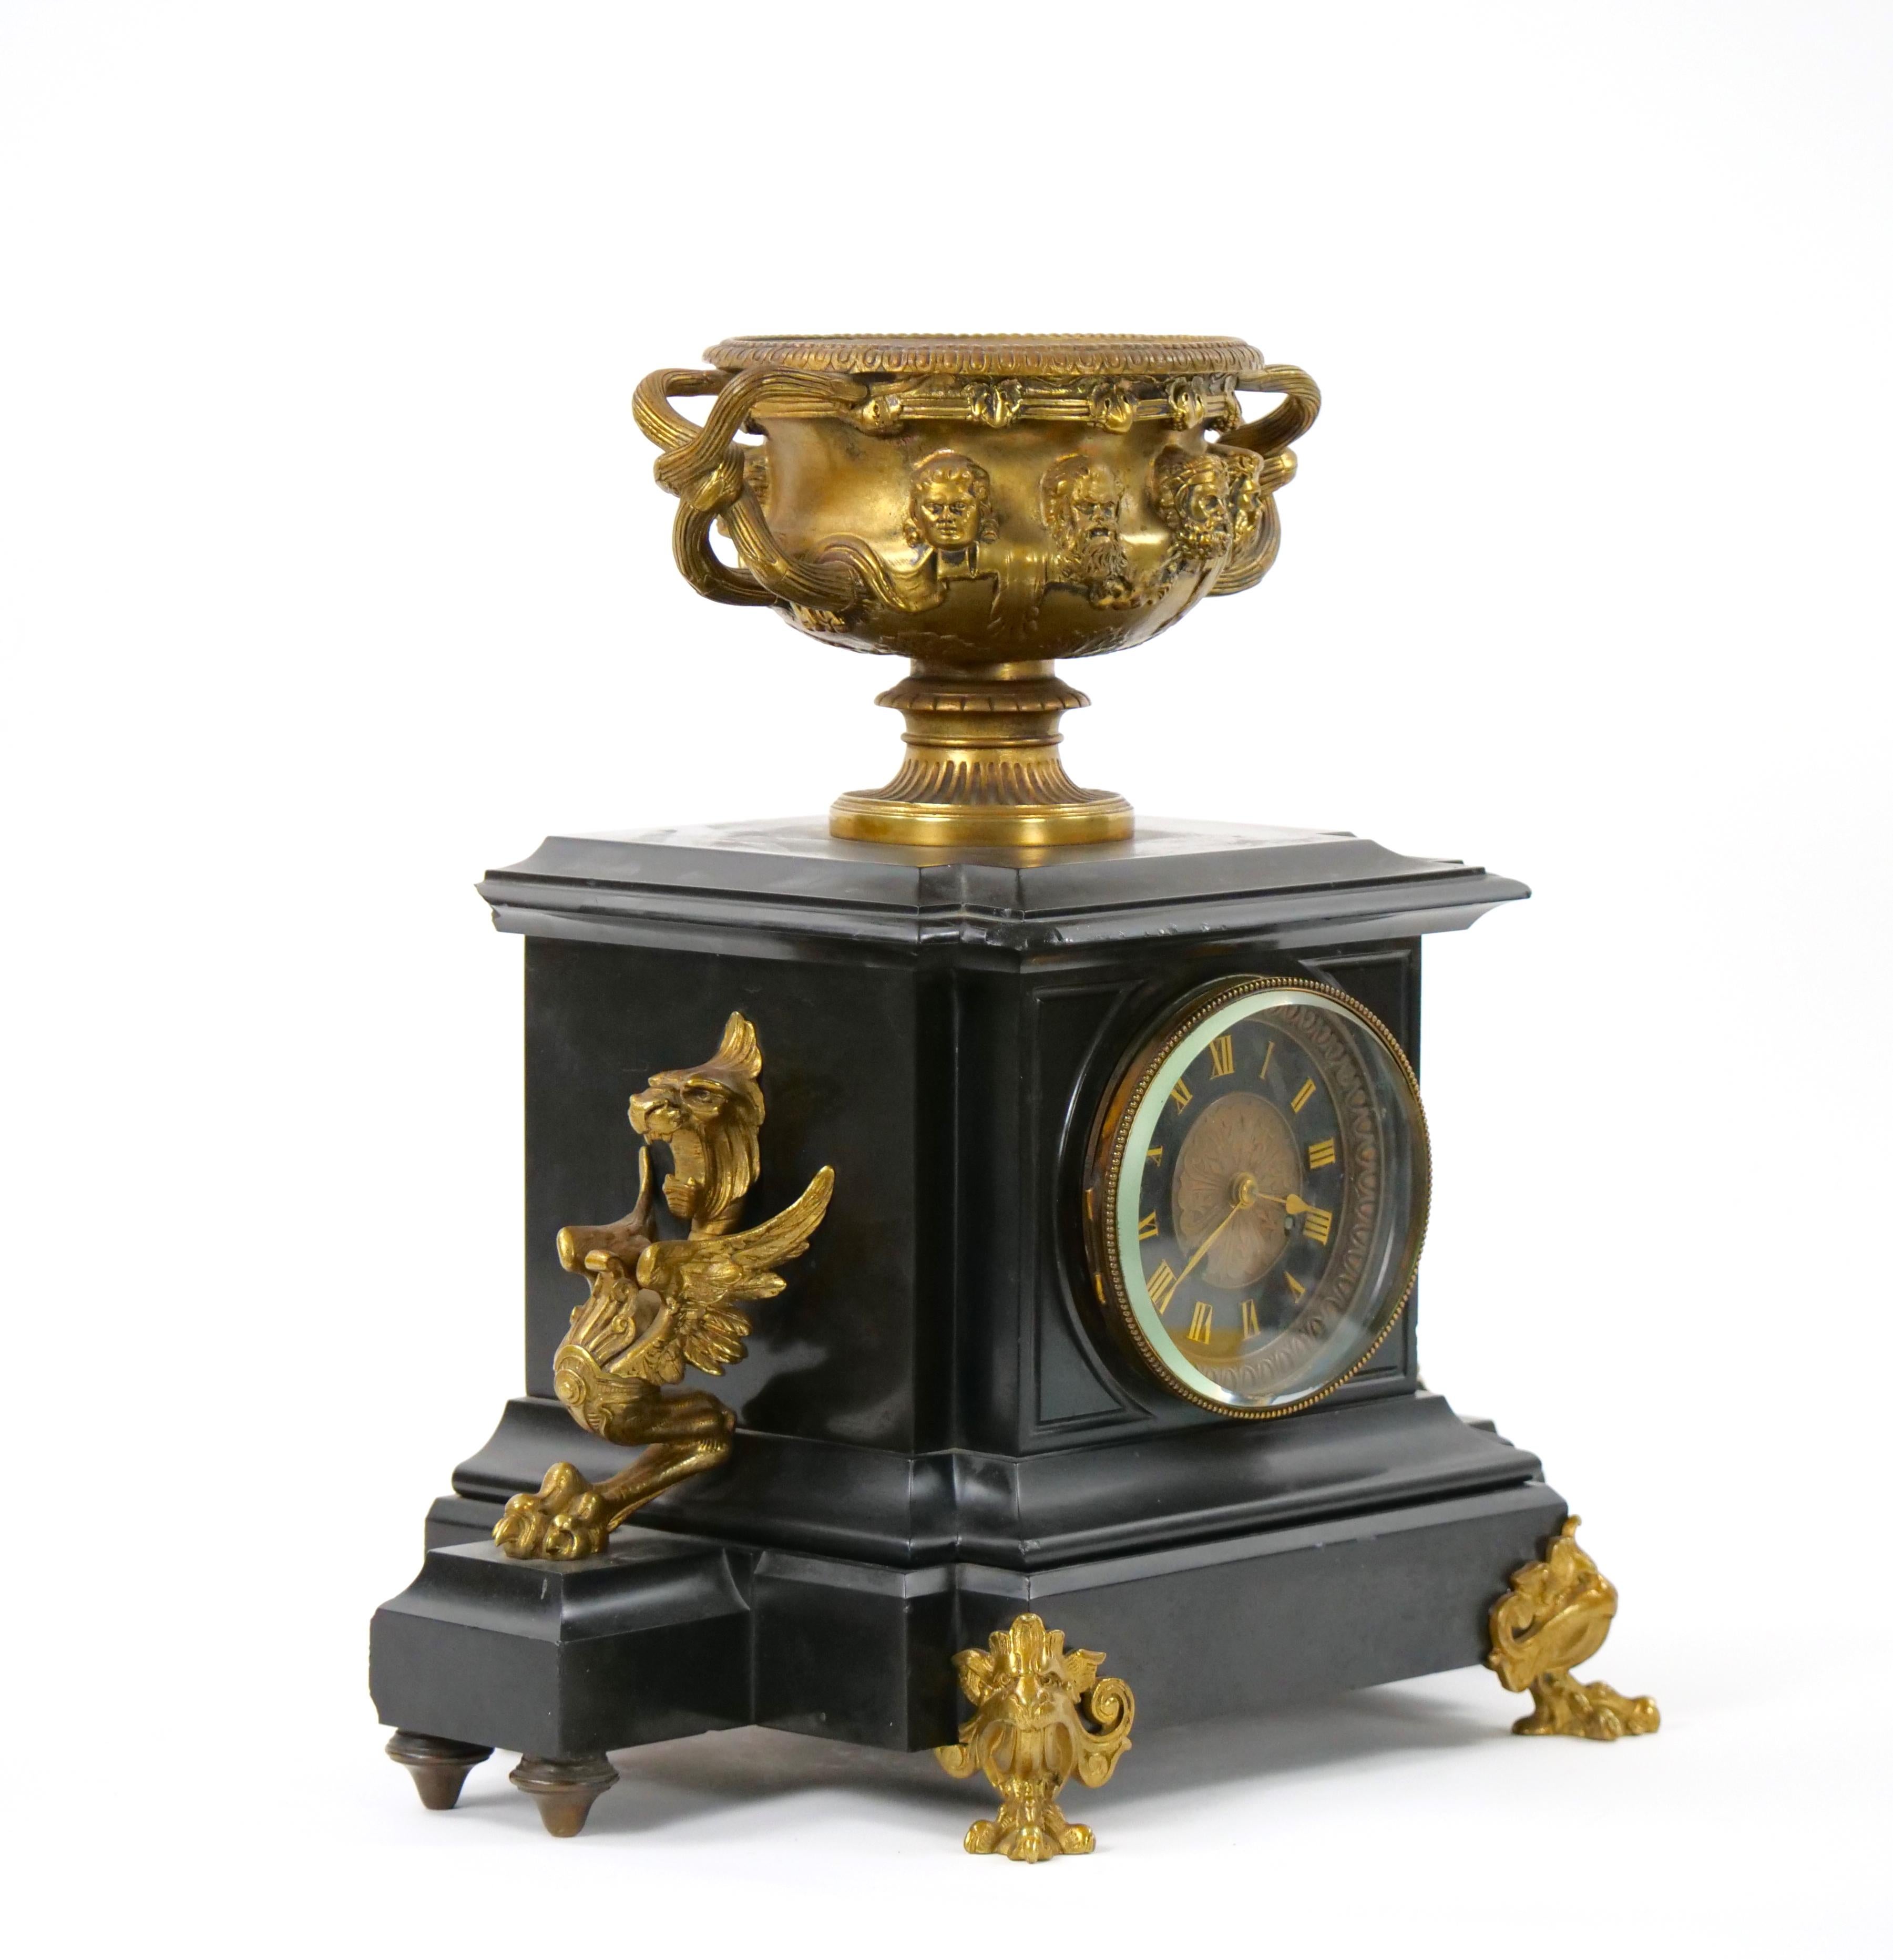 Plongez dans l'opulence du XIXe siècle avec cette exceptionnelle horloge de cheminée figurative en bronze français et marbre noir. Fabriquée avec un art méticuleux, cette horloge témoigne d'une époque où la beauté, le design et la fonction